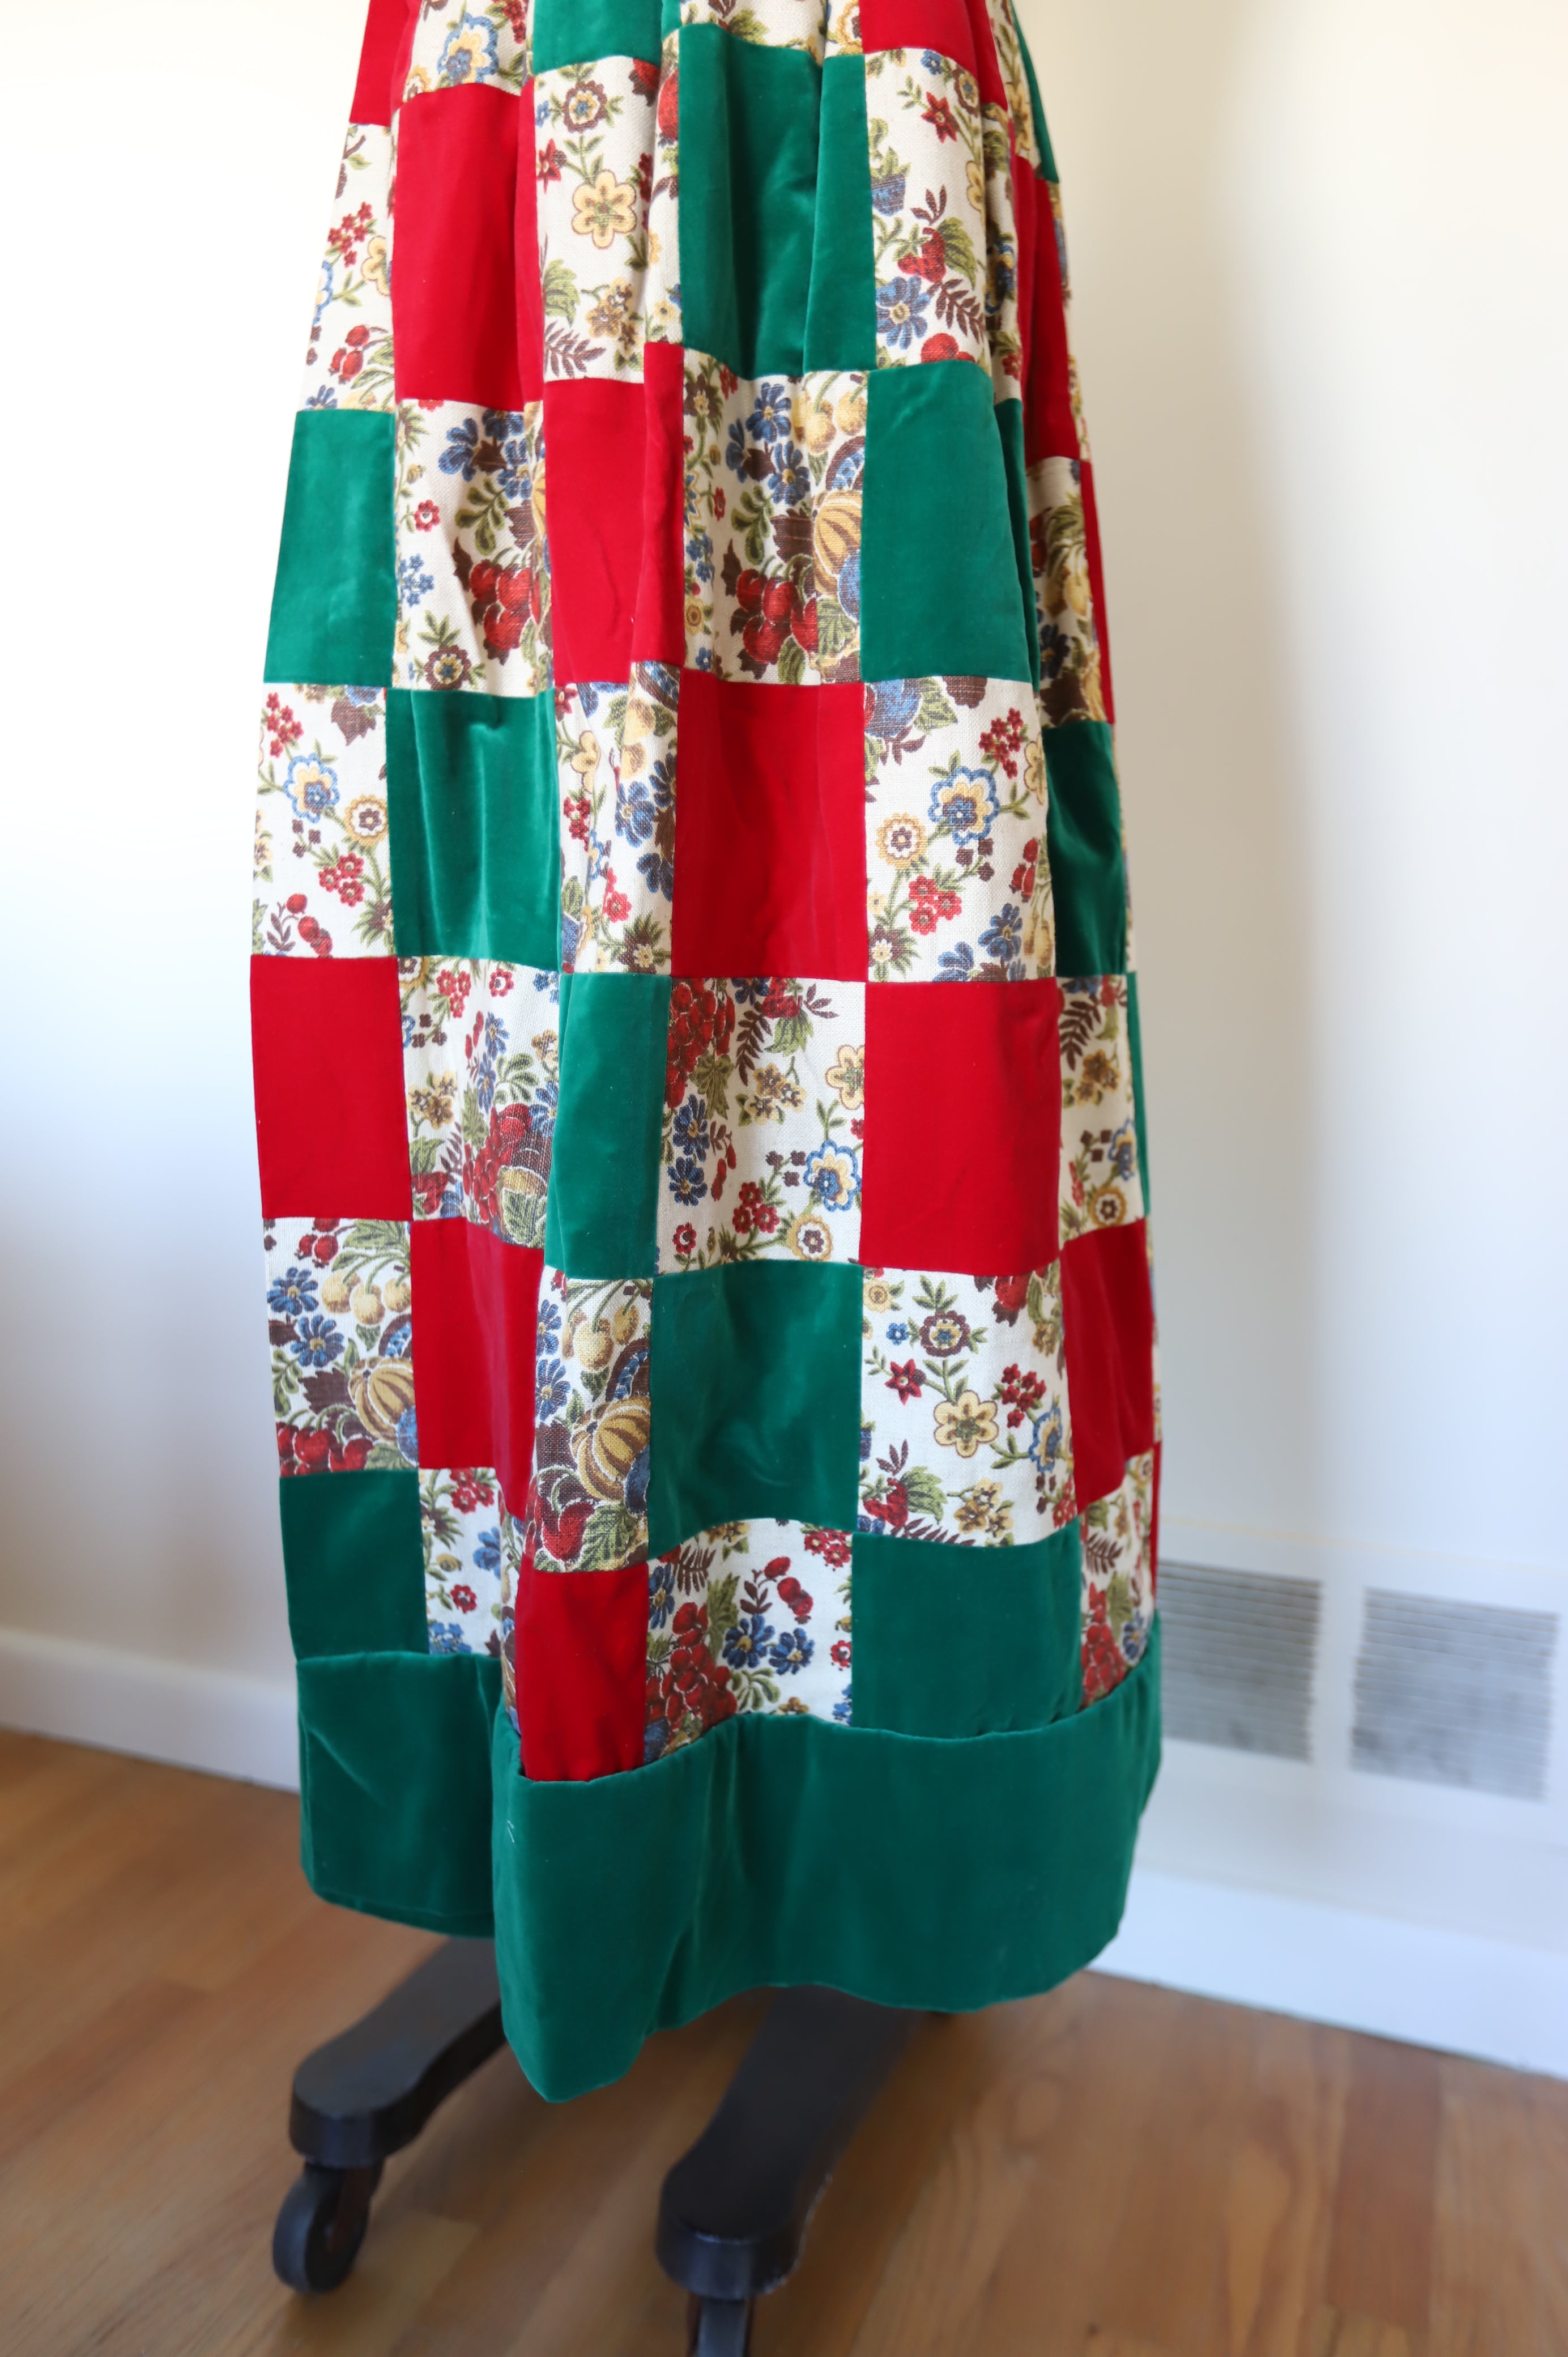 1970s Vintage Velvet Patchwork Christmas Skirt